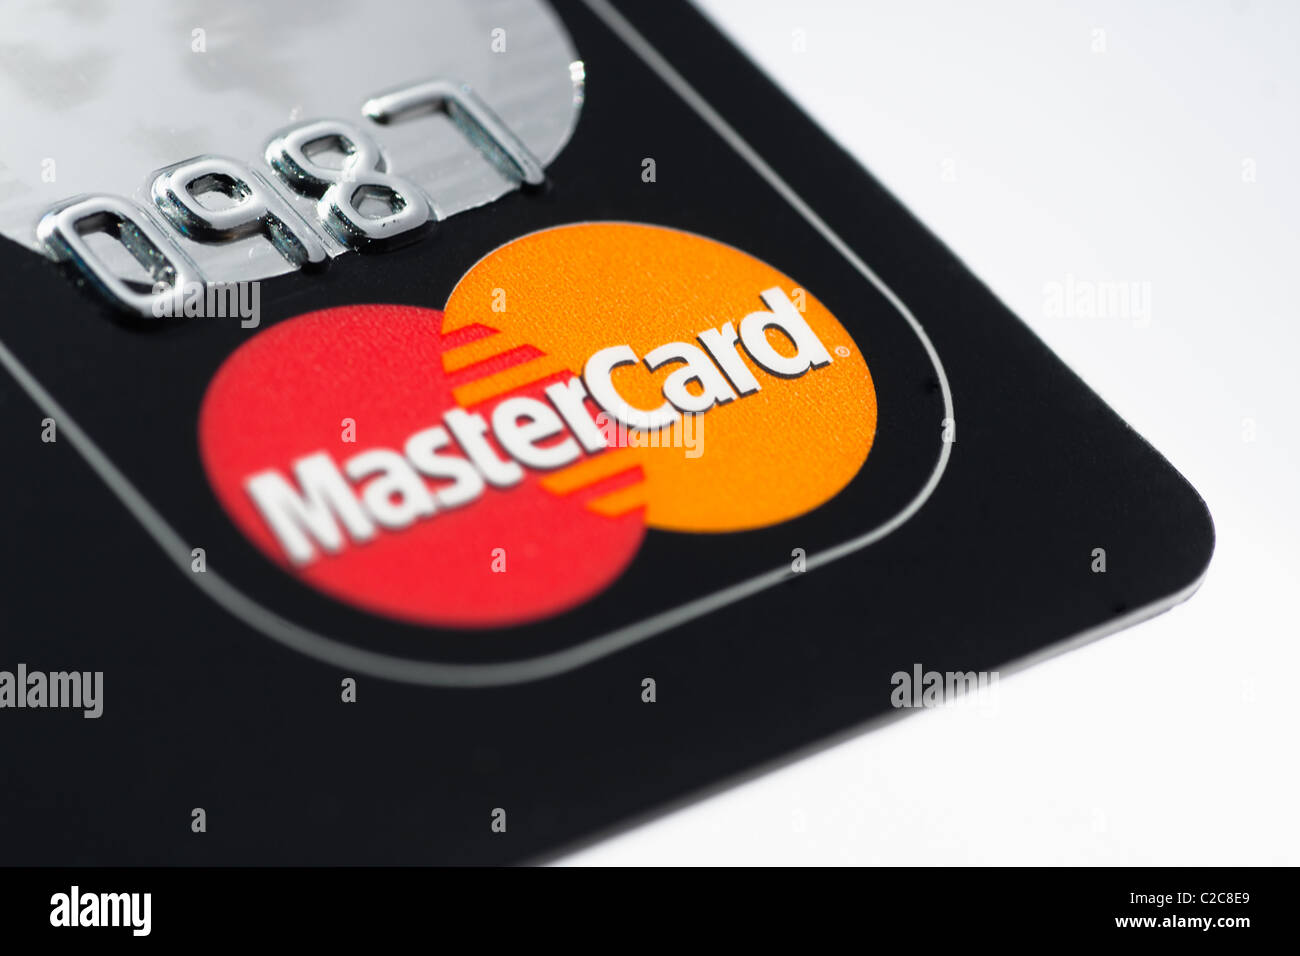 Eine Nahaufnahme Makroaufnahme einer Mastercard Kreditkarte. MasterCard ist eine der größten Kreditkarten-Unternehmen Stockfoto